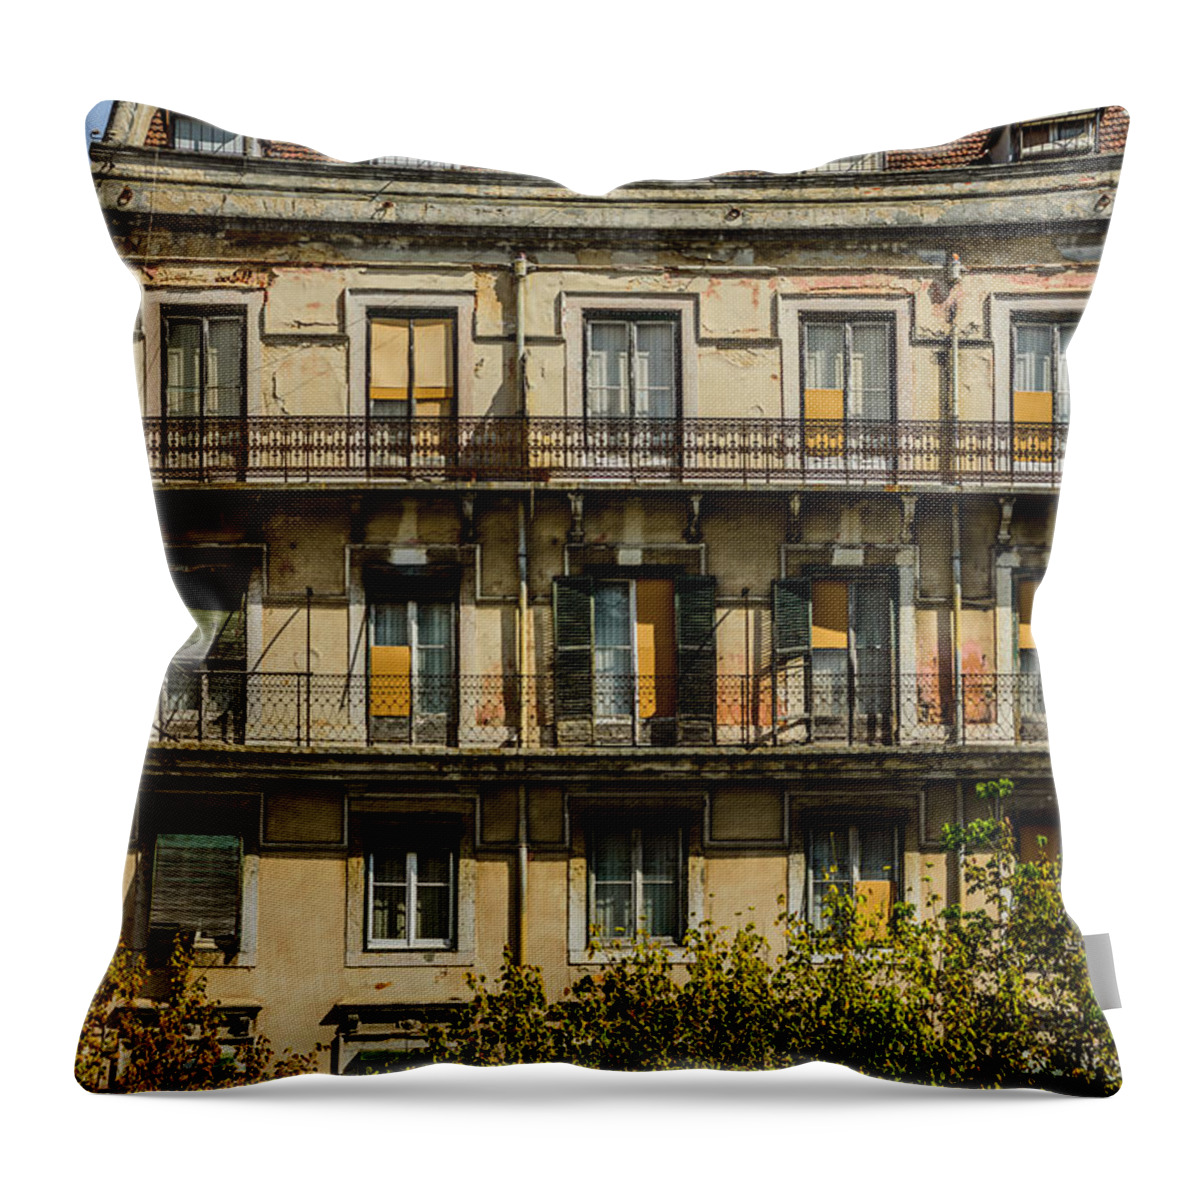 Facade Throw Pillow featuring the photograph Old Facade In Lisbon by Marco Oliveira